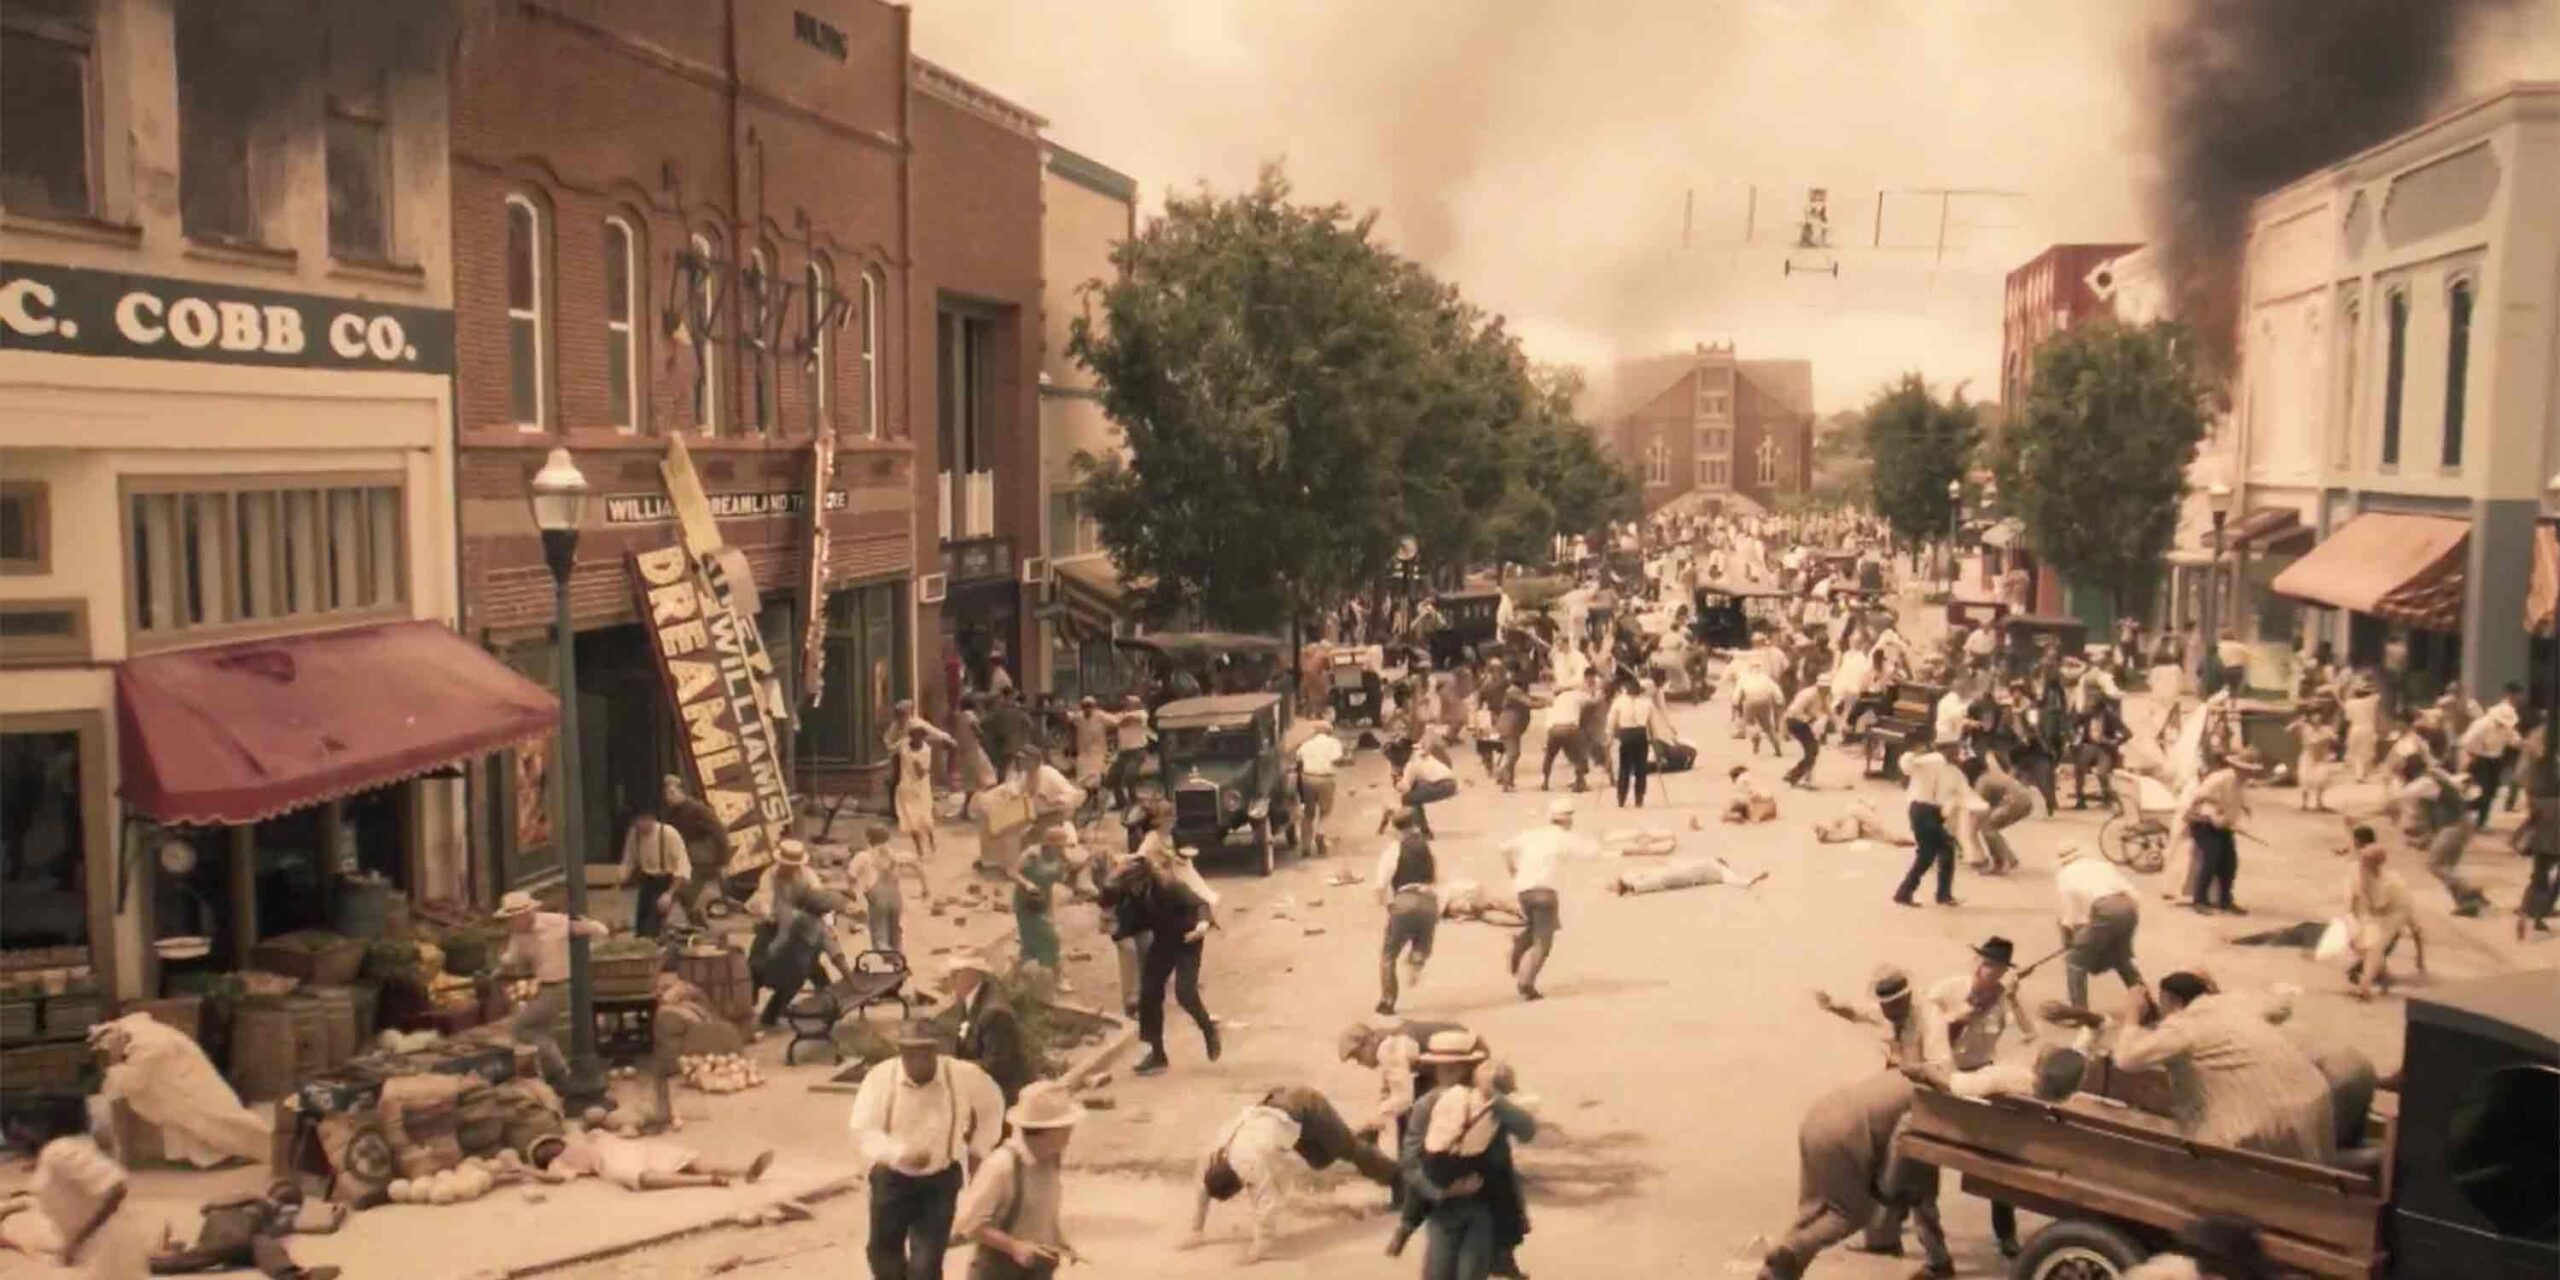 1921 Masacre de Tulsa: Ensayo de bombardeo contra una “raza inferior”